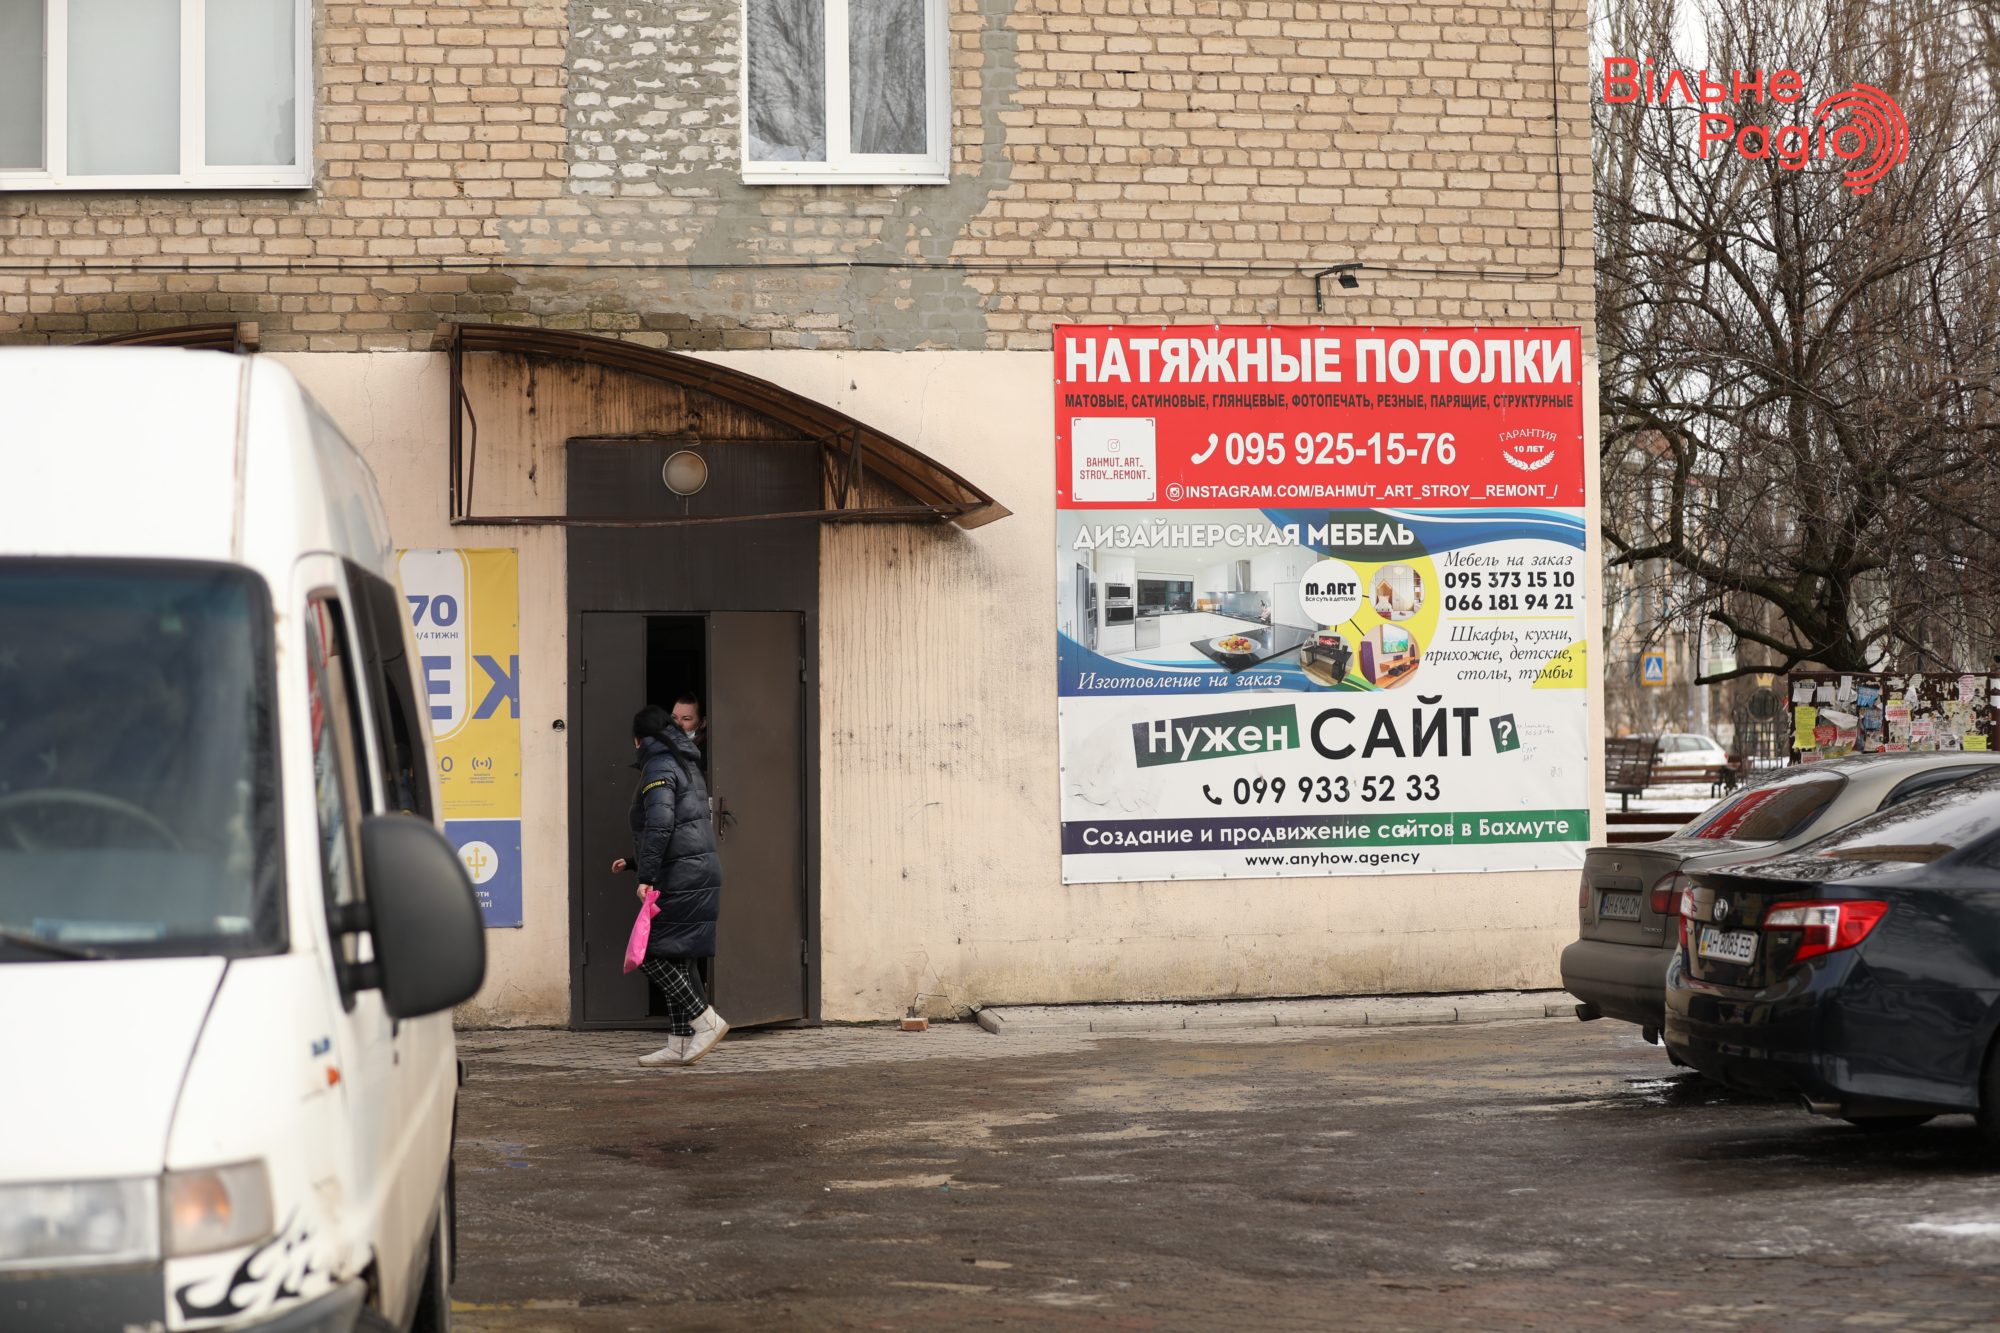 Глав 7 громад Донбасса просят убрать рекламу, которая нарушает “языковой” закон. Какая ситуация в Бахмуте”(ФОТО) 7